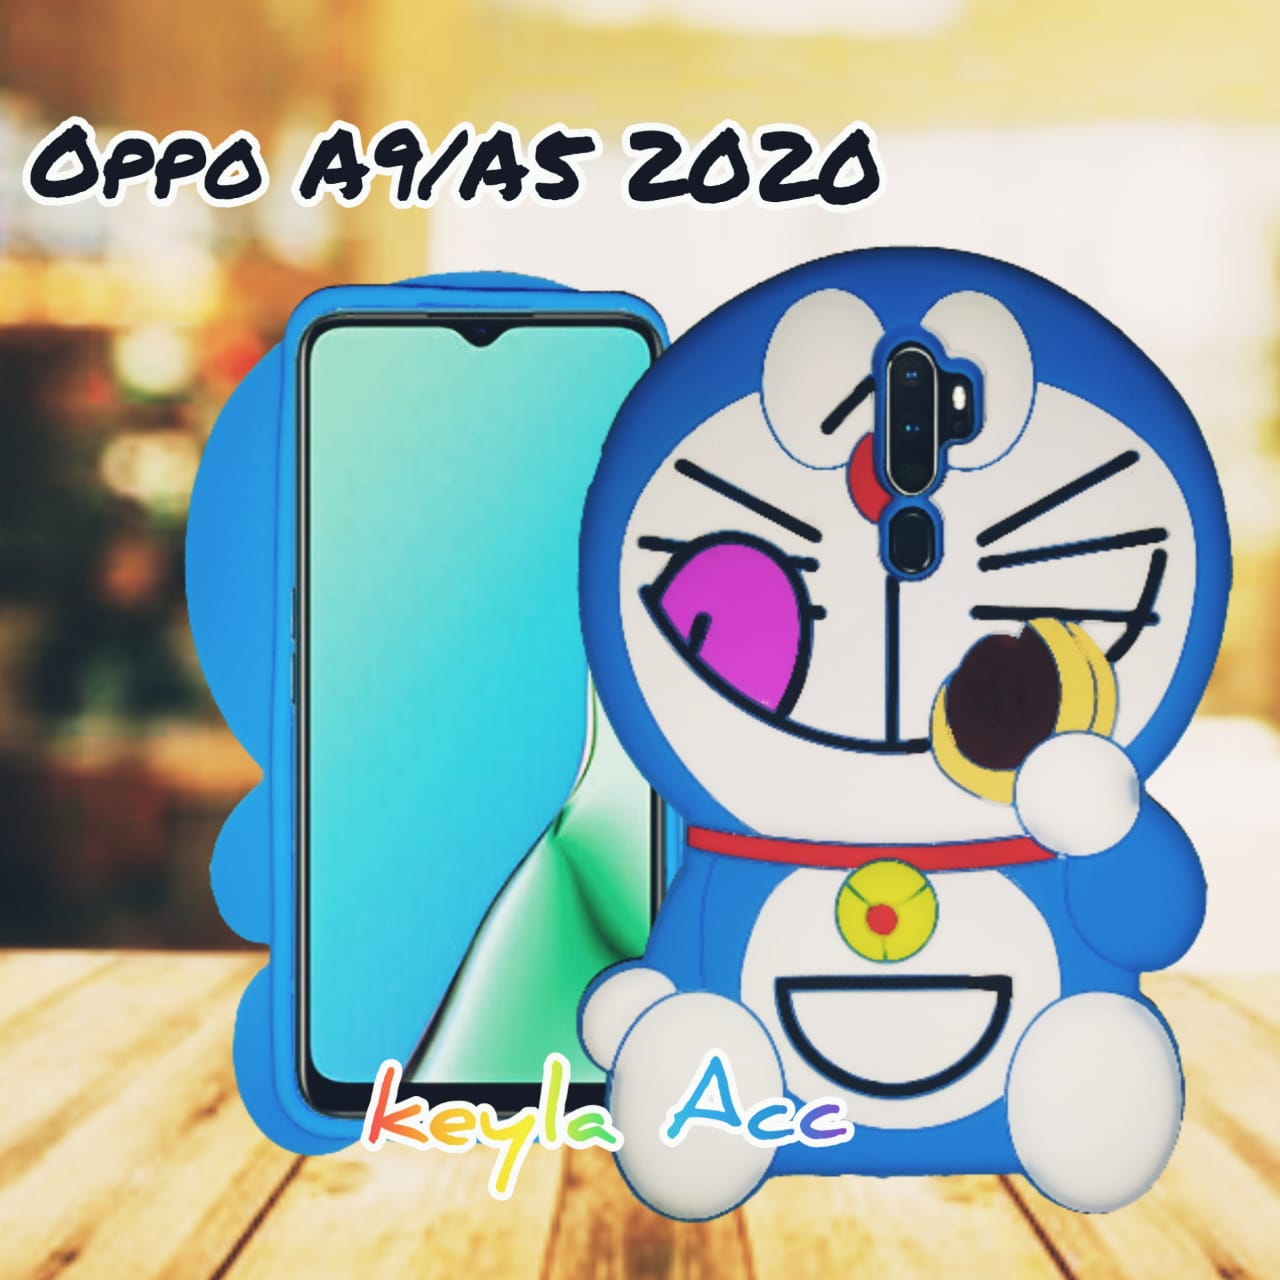 Silicon Kartun Doraemon 3d Softcase Casing For Oppo A9 A5 2020